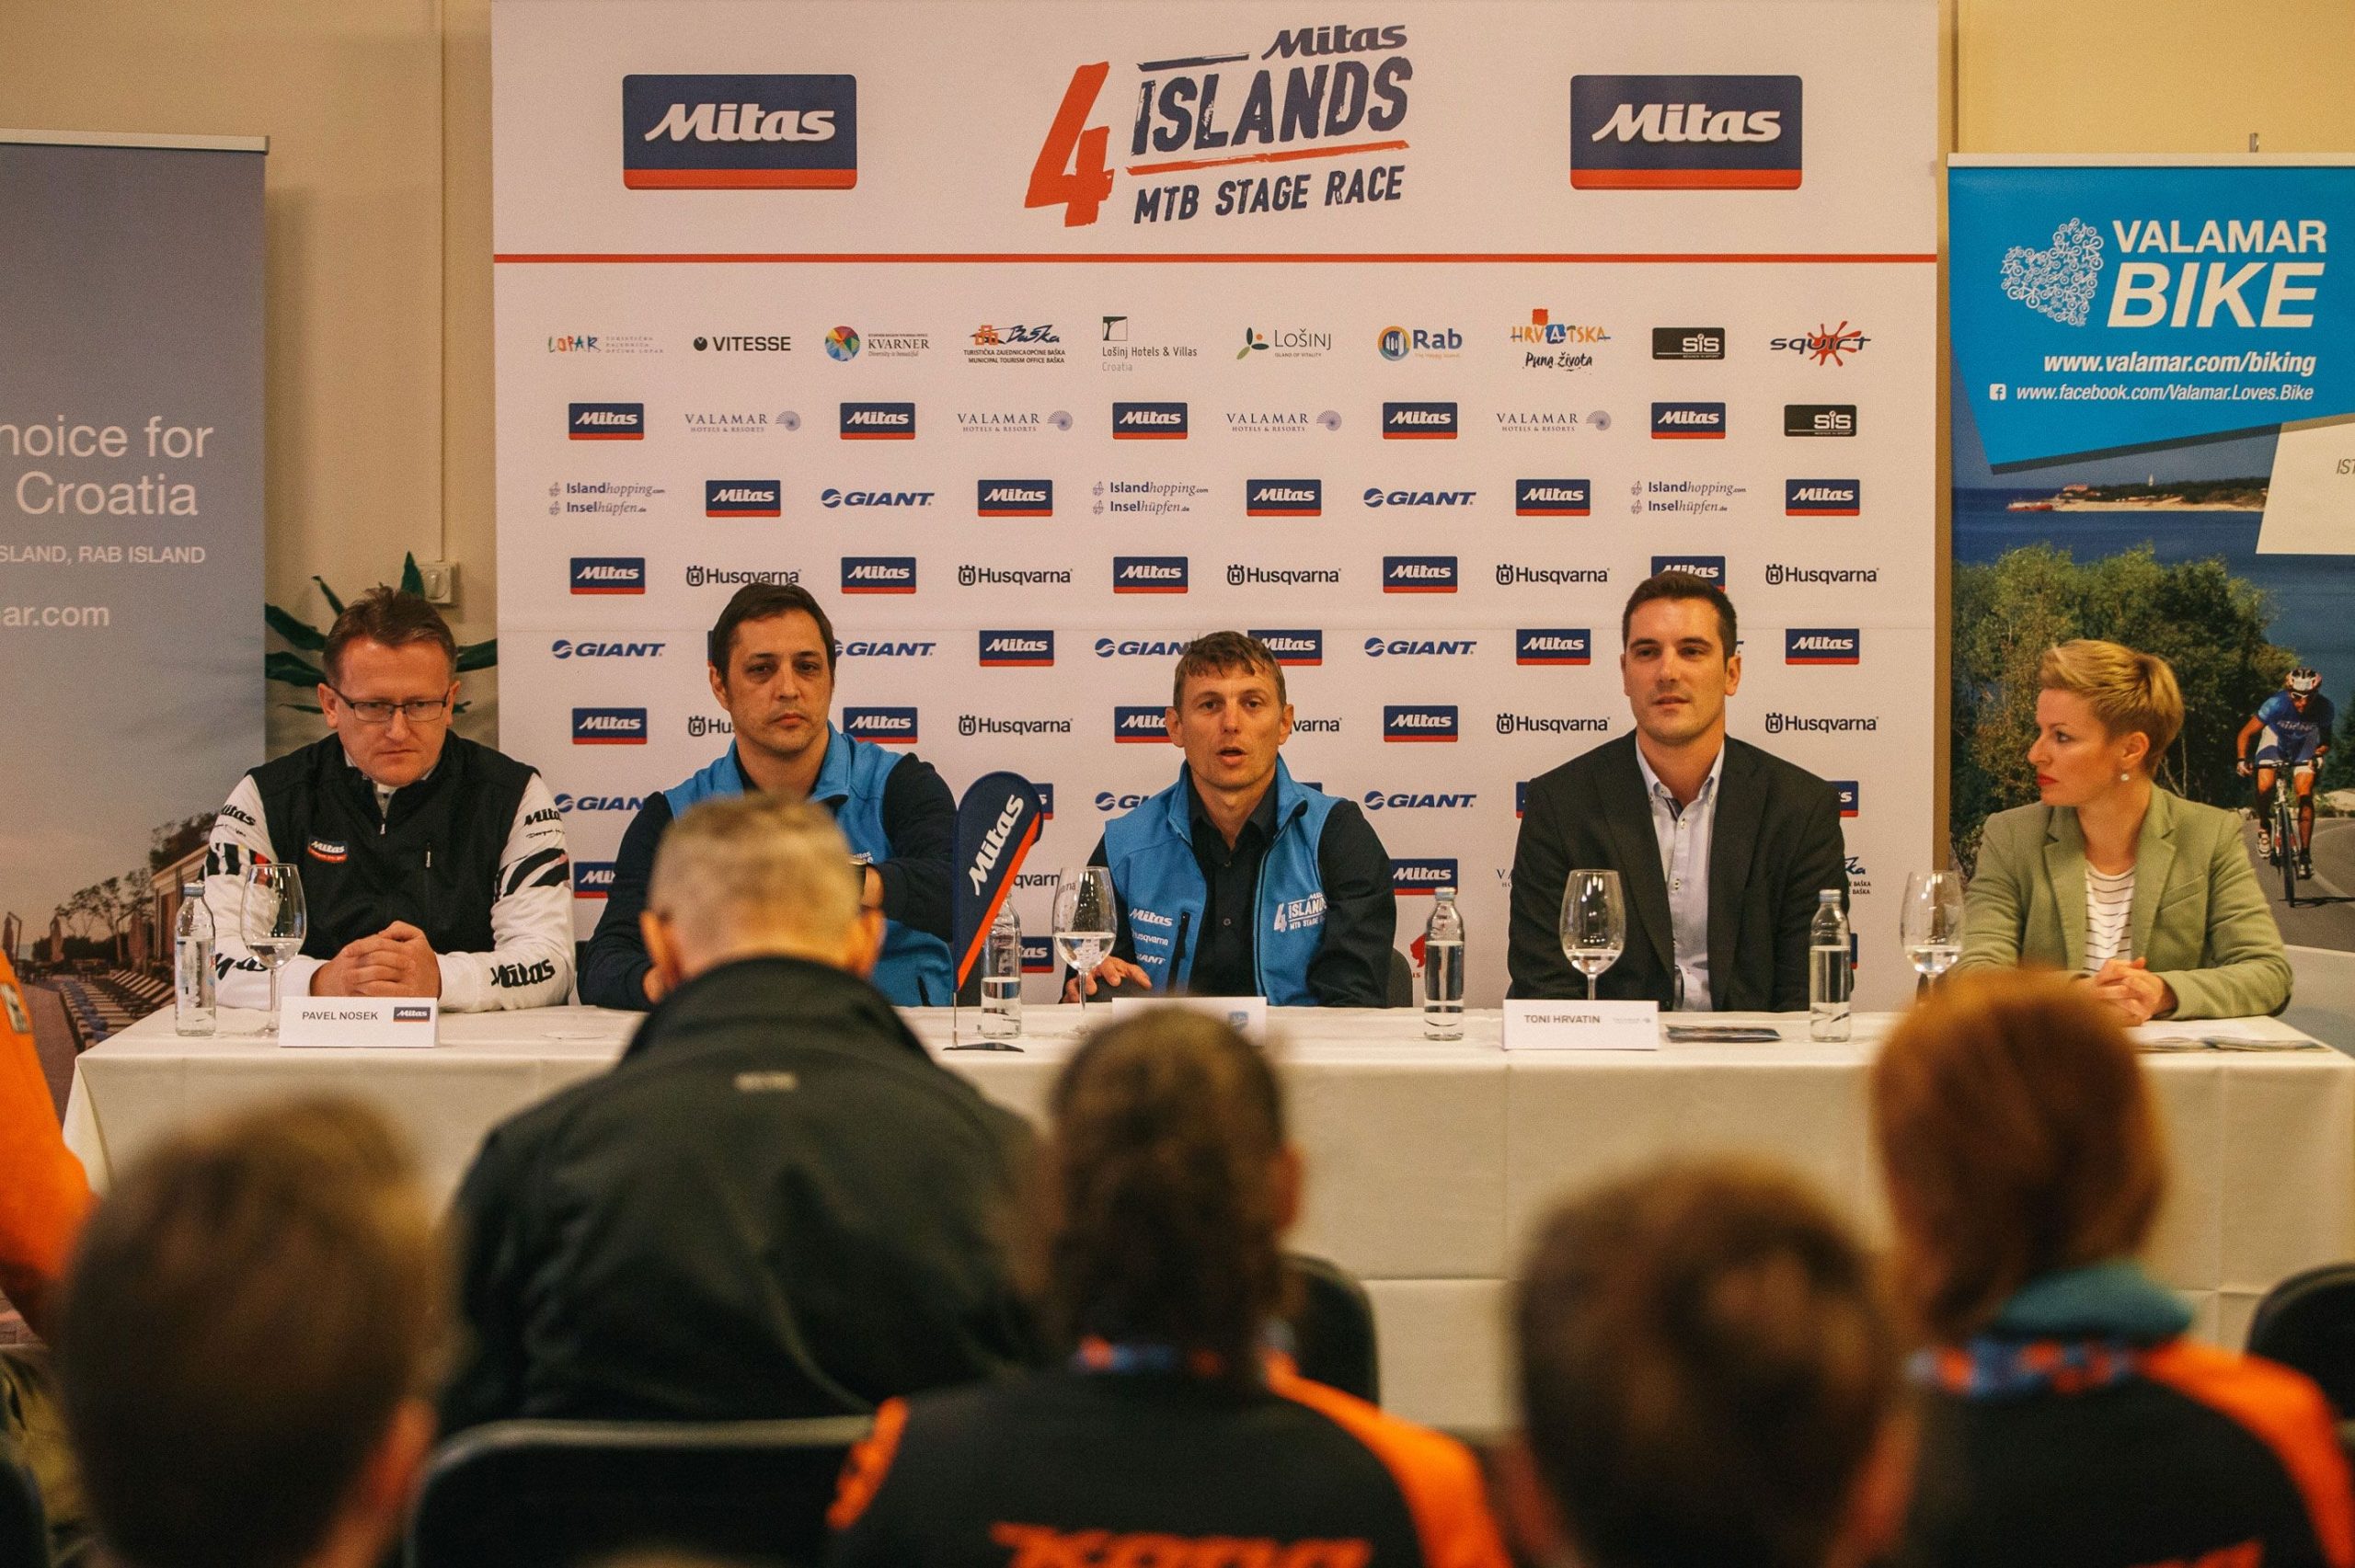 Kreće treće izdanje Mitas 4 Islands MTB stage race utrke po Krku, Rabu, Cresu i Lošinju